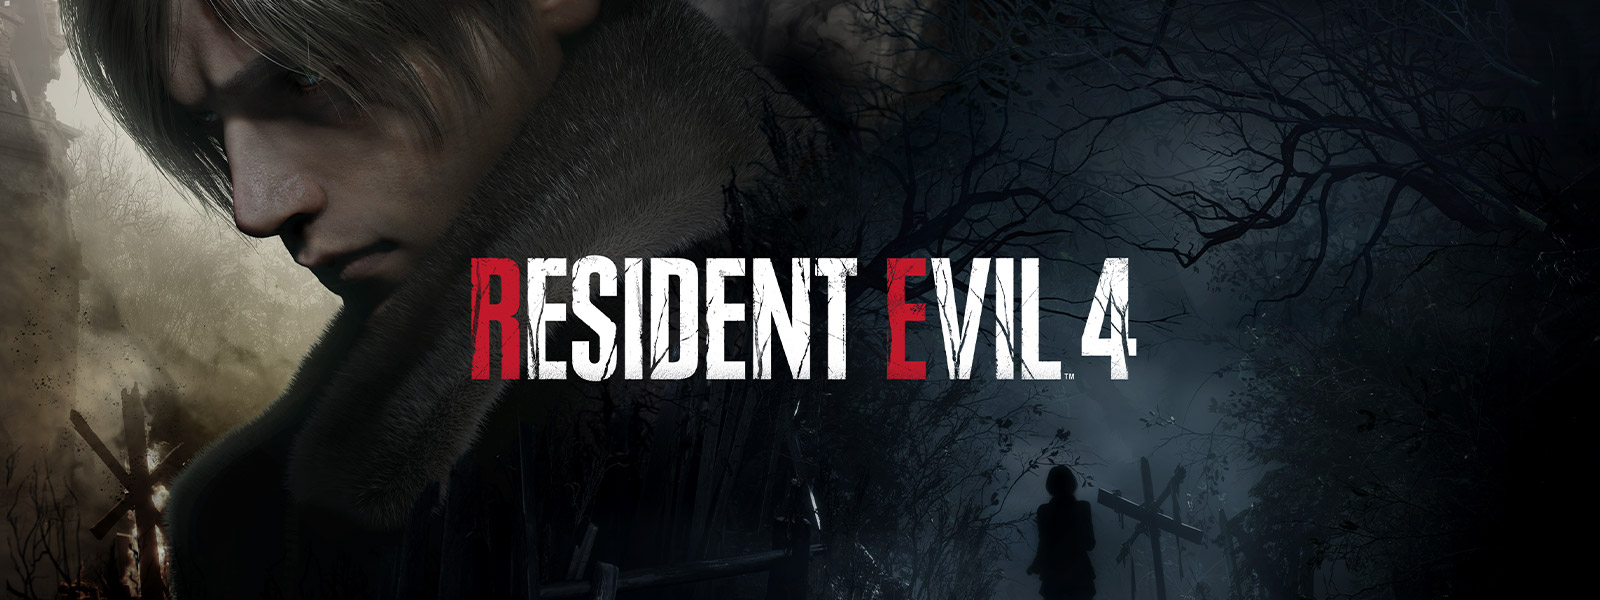 Resident Evil 4, un homme aux cheveux gris se détourne avec gravité pendant qu’une femme marche sur un sentier forestier sombre et sinistre.